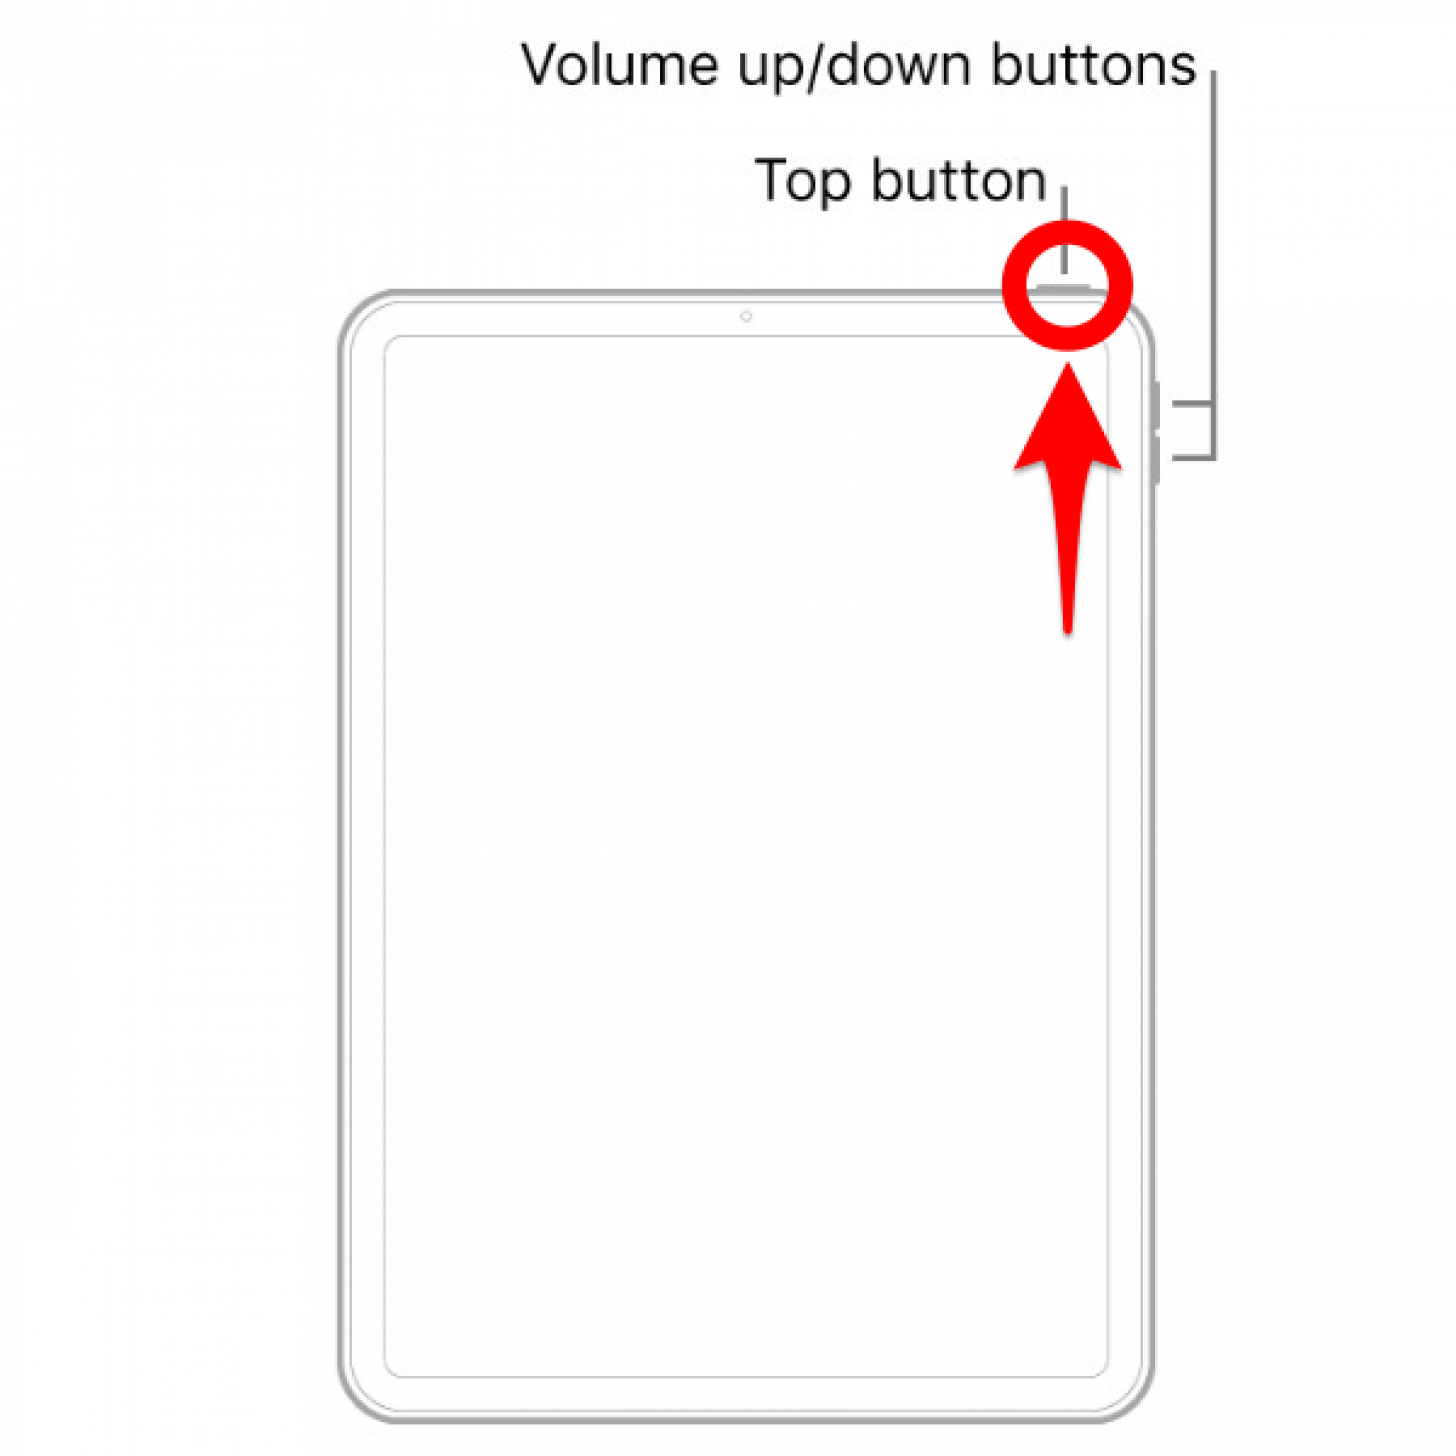 Mantenga presionado el botón superior: reinicie el iPad congelado